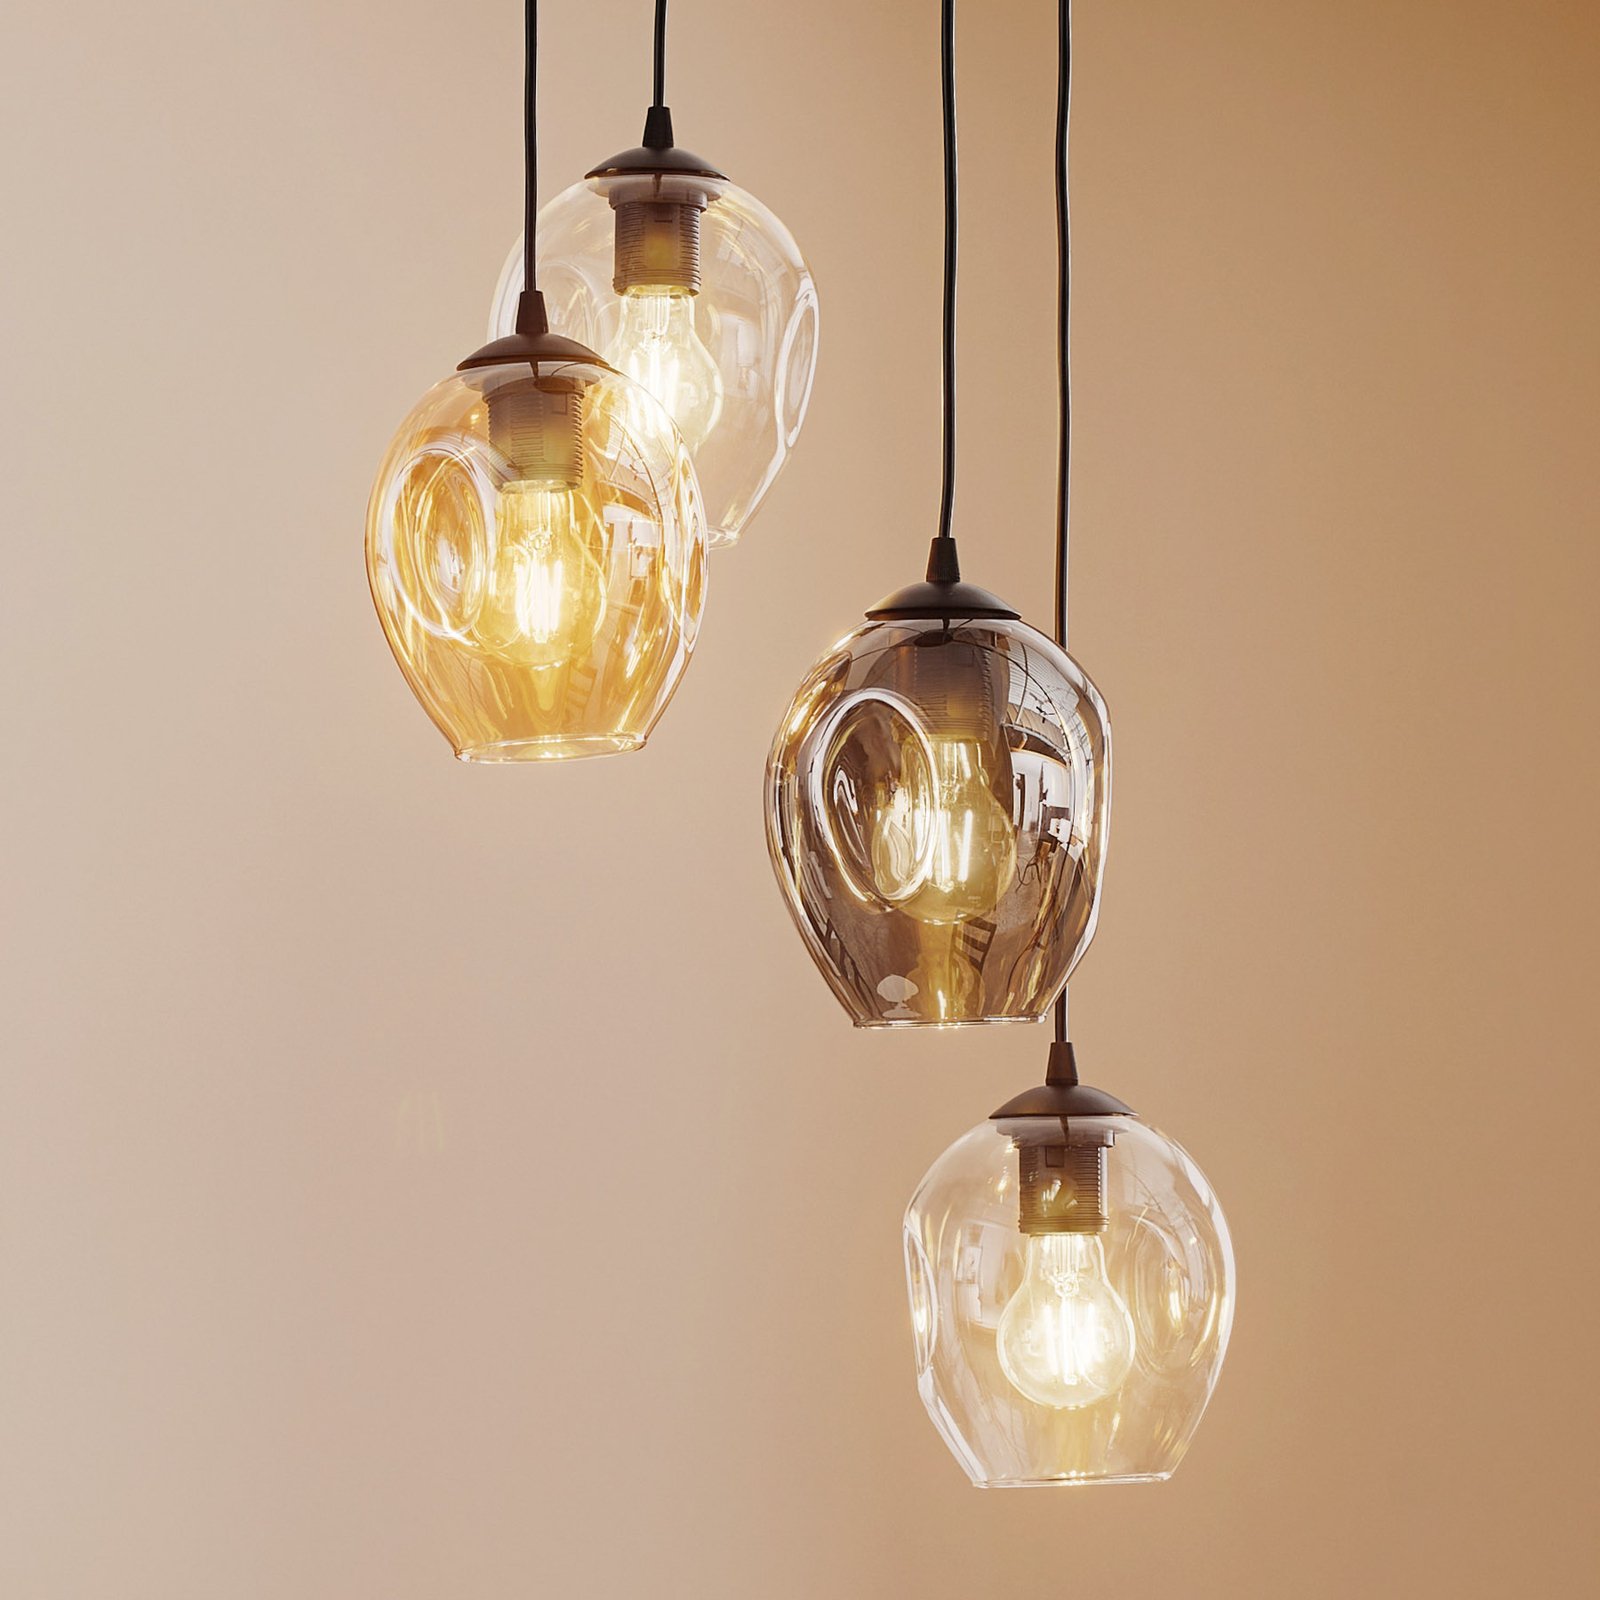 Hanglamp Starla rond 4-lamps grafiet/amber/helder